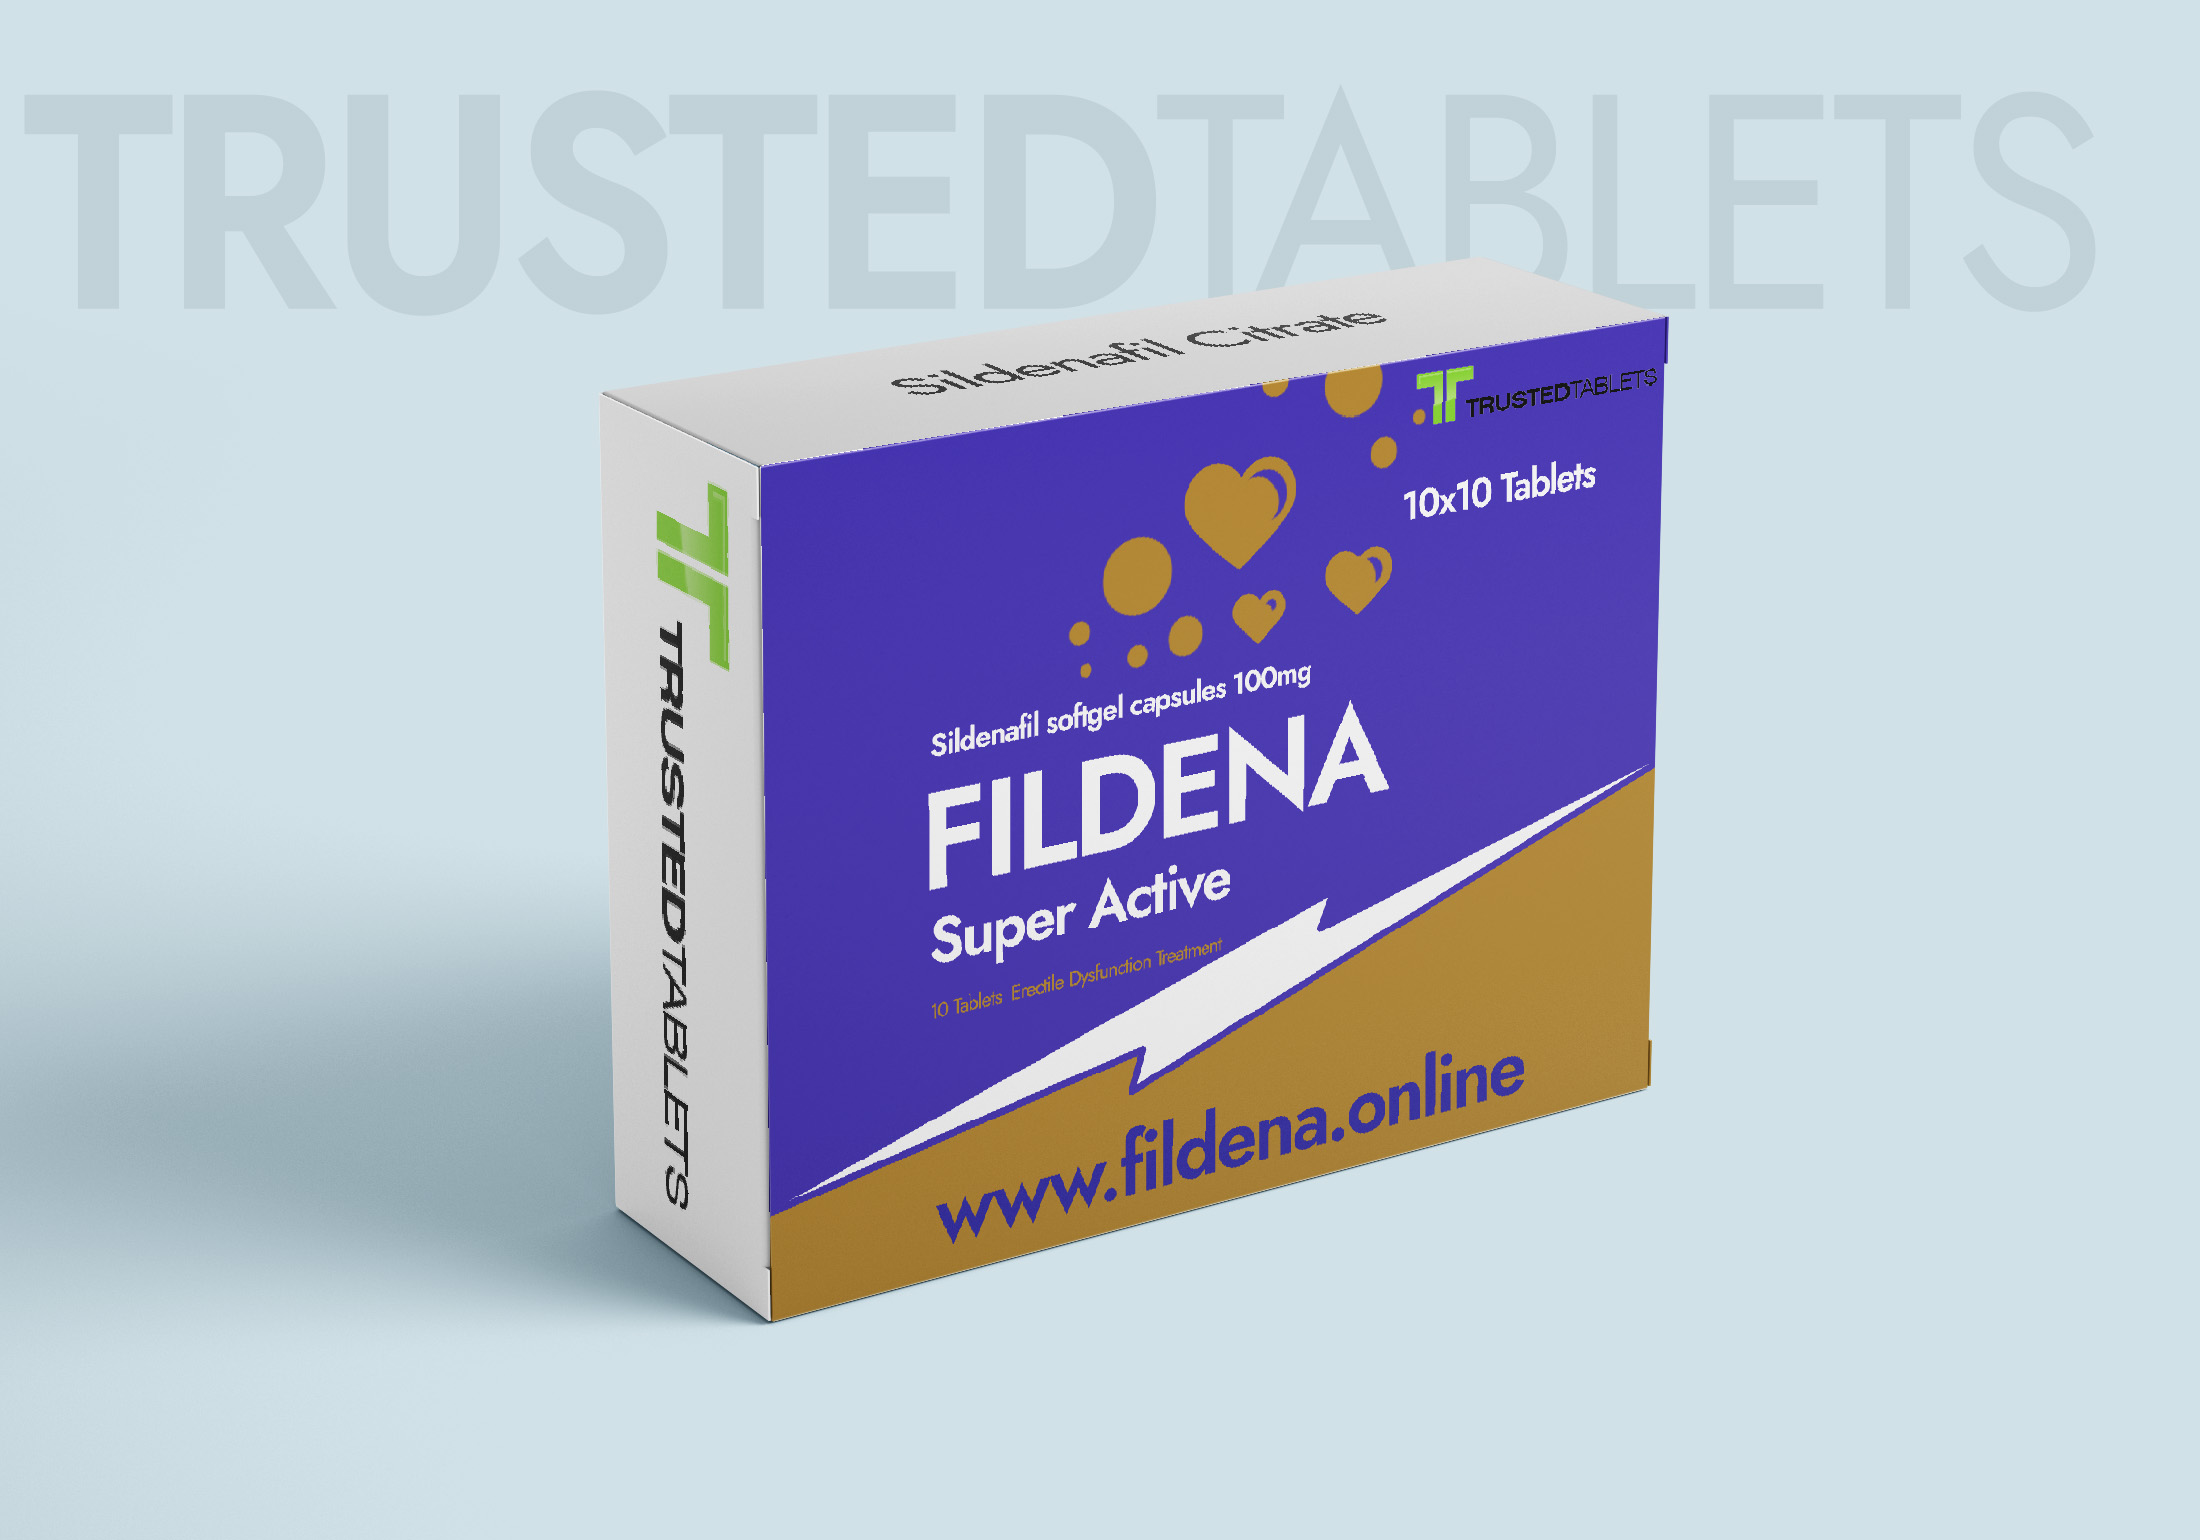 Fildena Super Active TrustedTablets